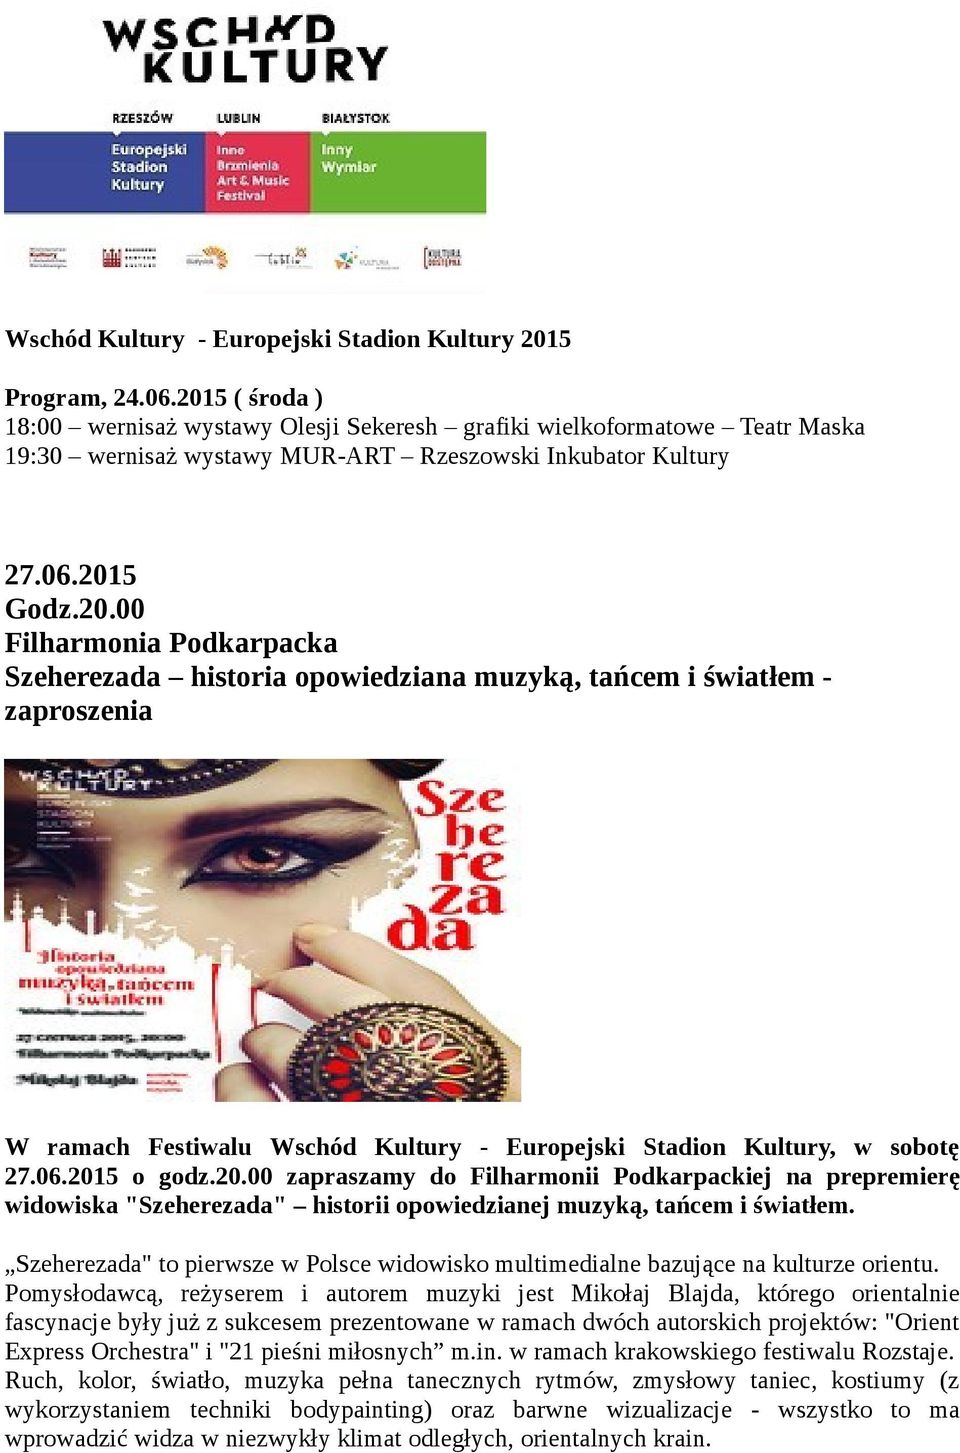 06.2015 o godz.20.00 zapraszamy do Filharmonii Podkarpackiej na prepremierę widowiska "Szeherezada" historii opowiedzianej muzyką, tańcem i światłem.